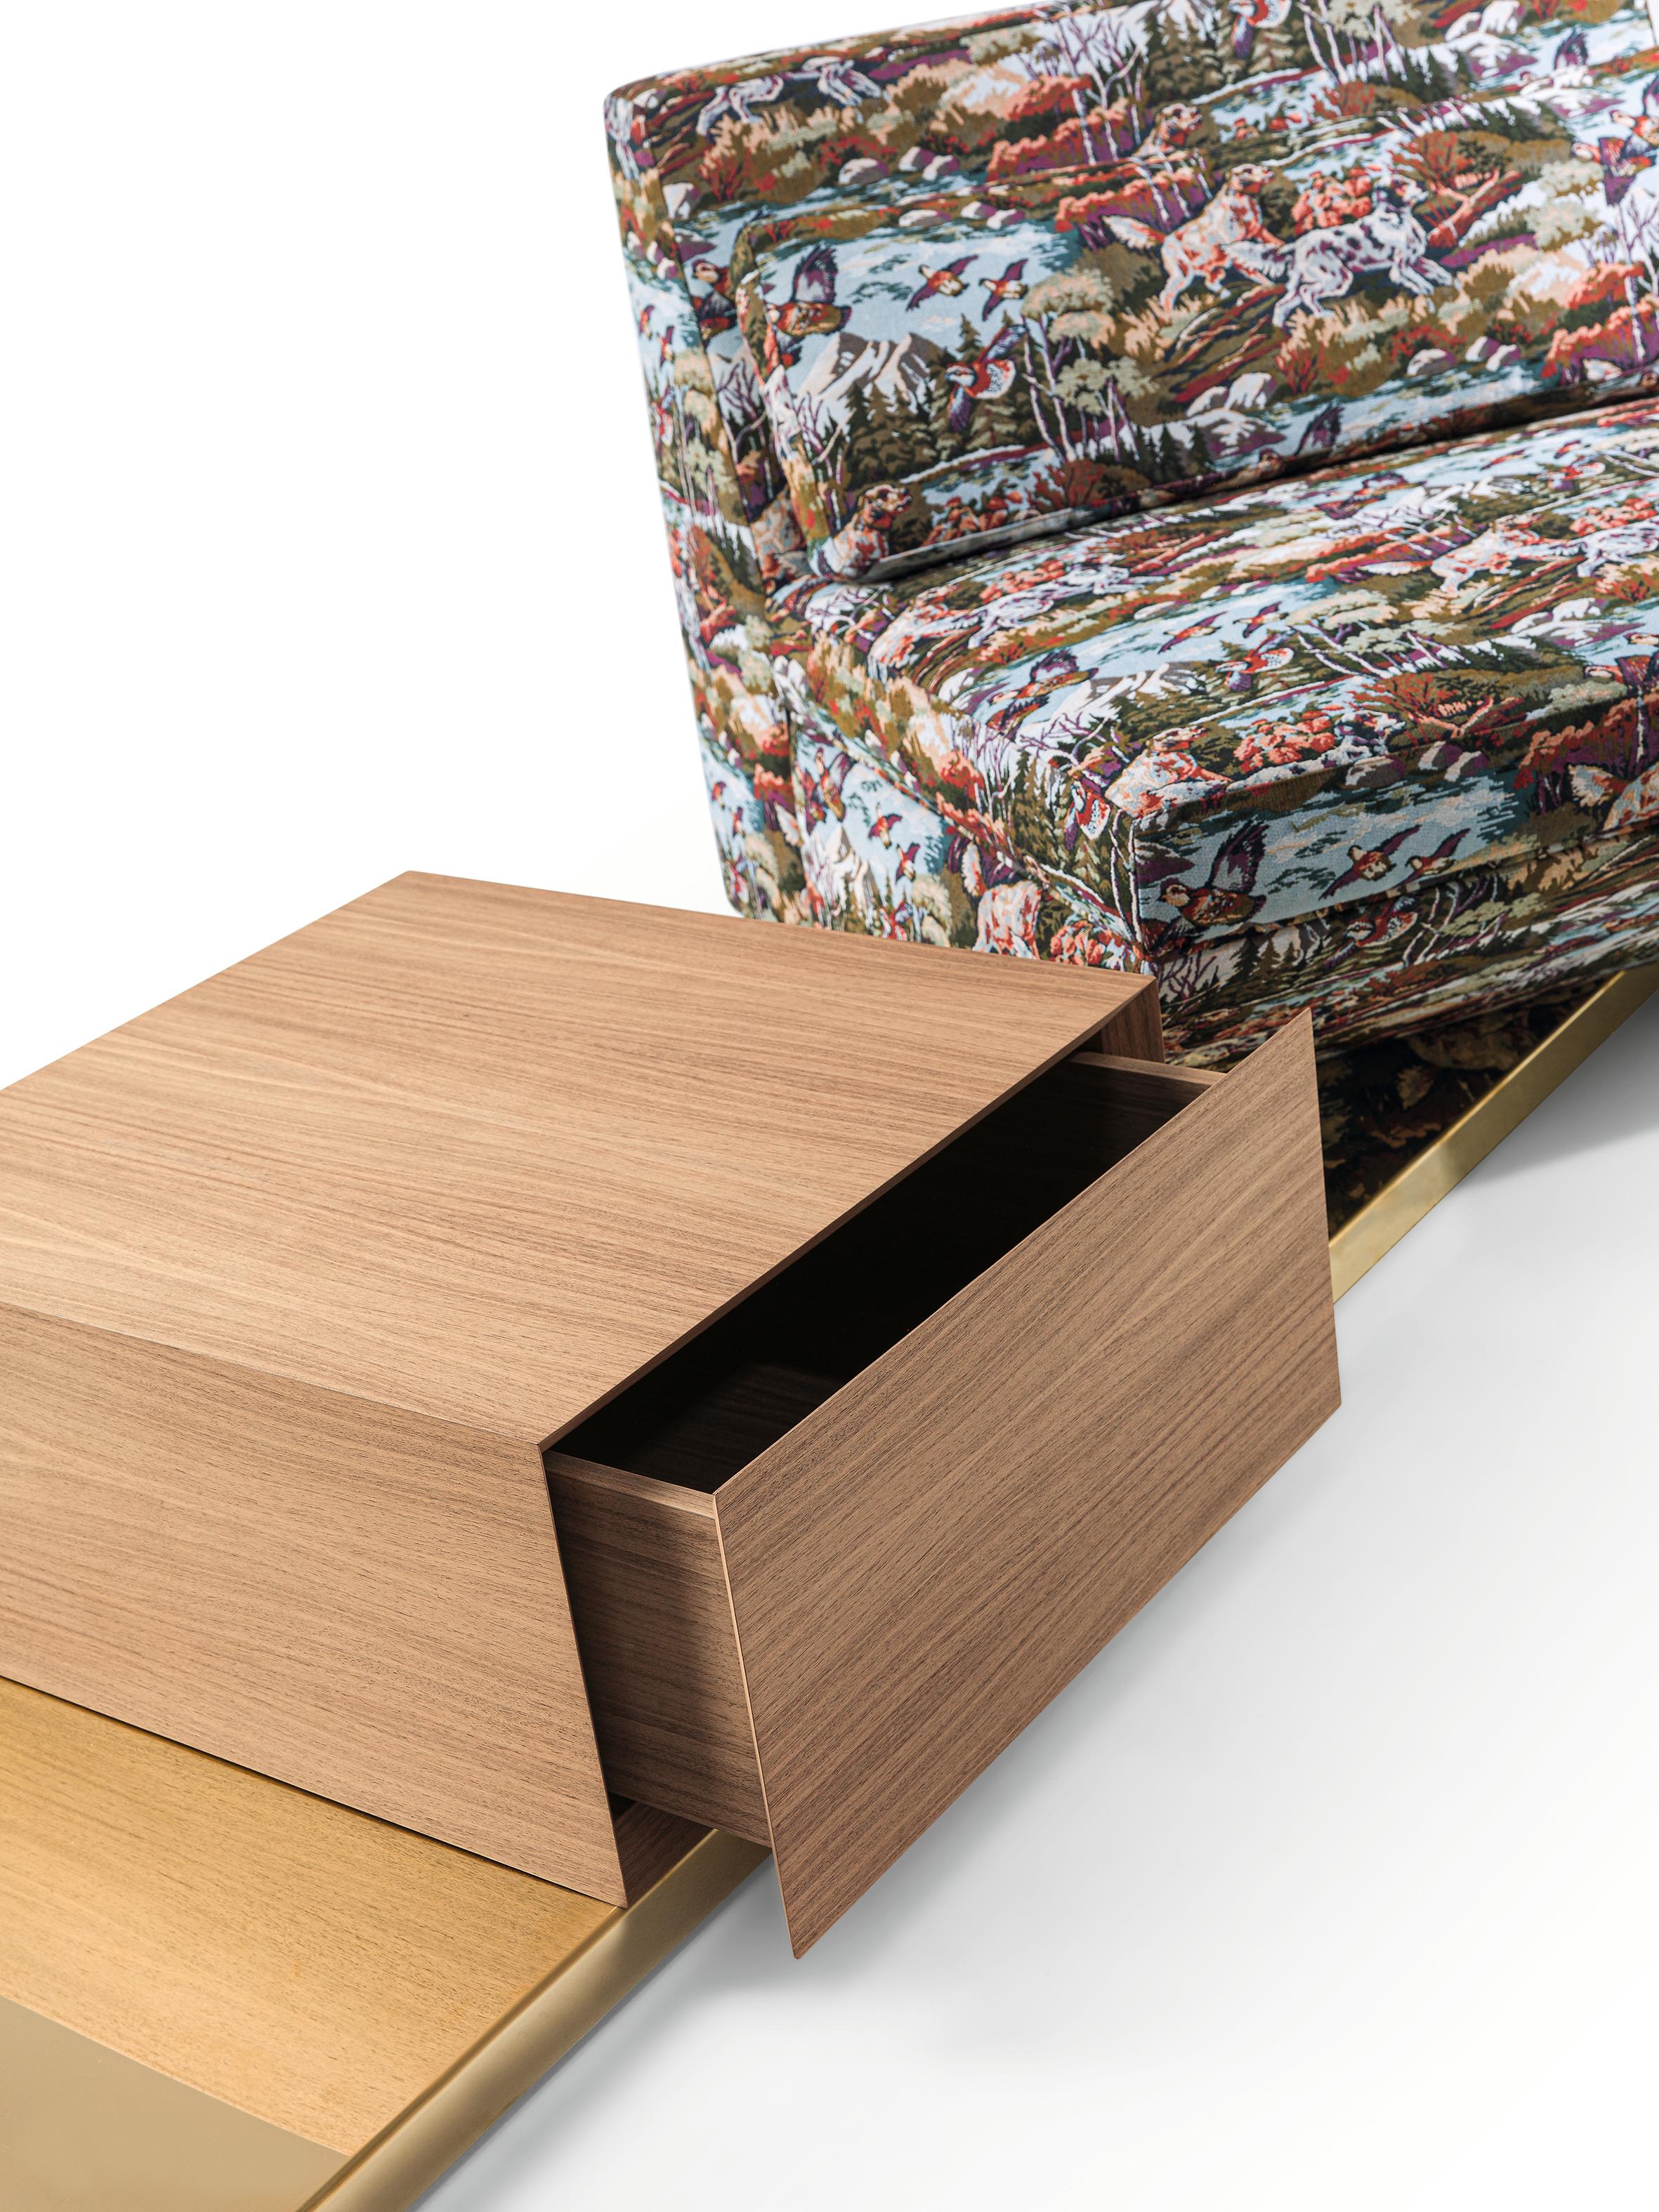 Conçu dans un esprit de polyvalence, cet ensemble de canapé modulaire présente les caractéristiques suivantes :

a) Deux sièges pivotants, rembourrés de manière experte pour plus de confort.
b) Une table élégante en noyer Canaletto dotée d'un tiroir